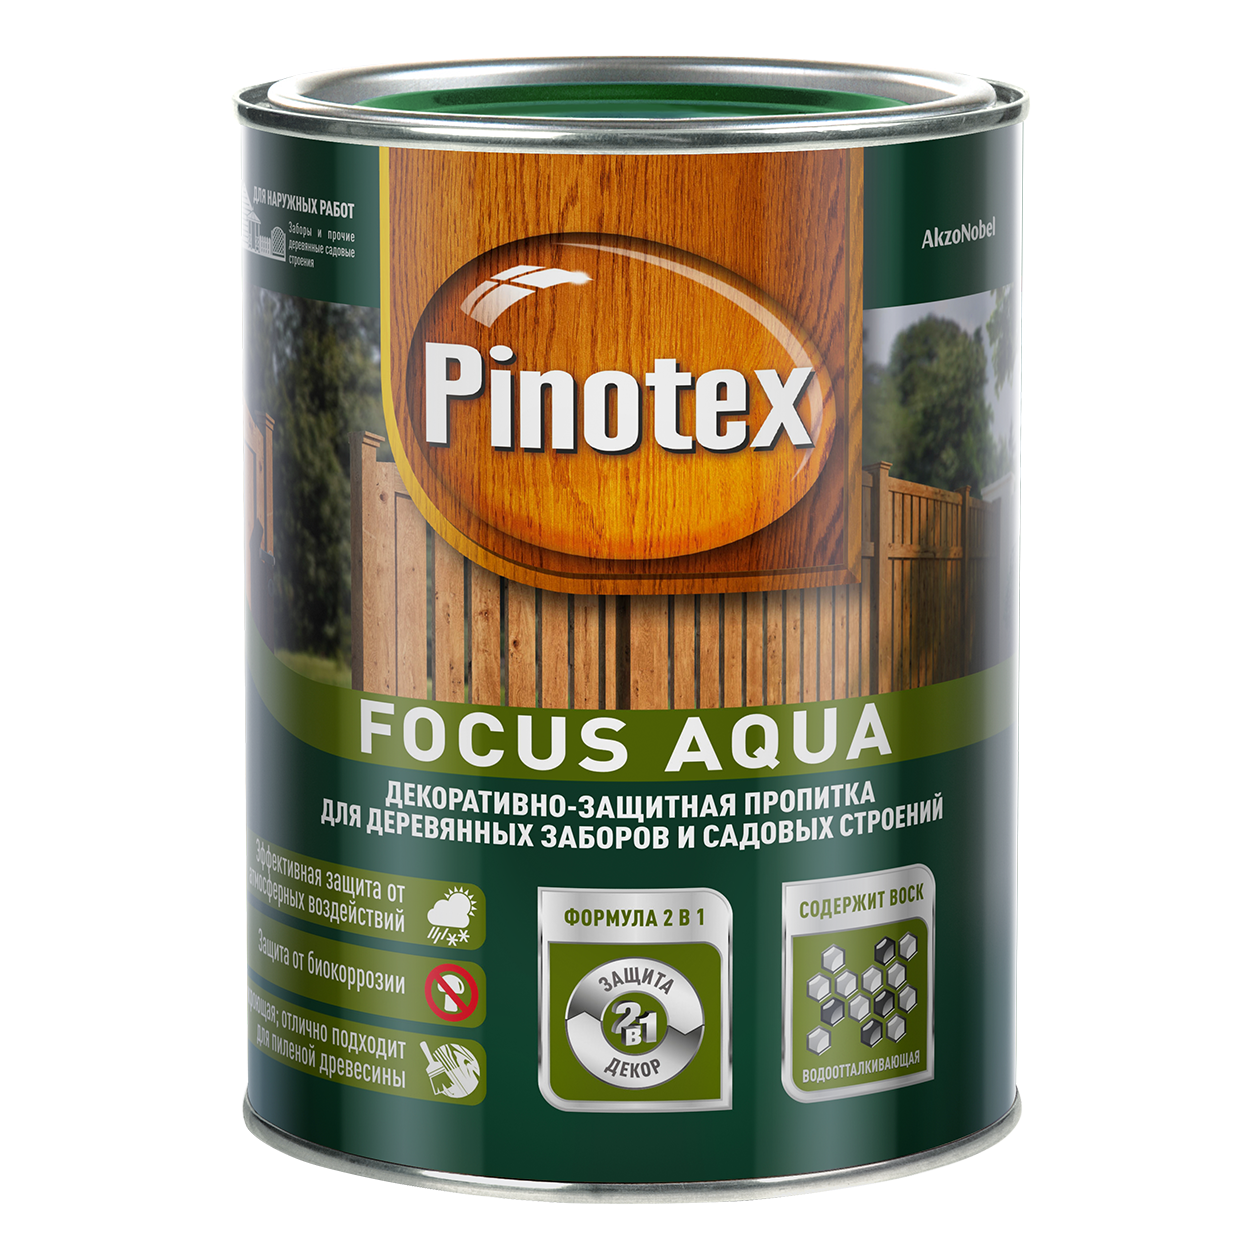 Pinotex Focus Aqua, Золотая осень, 2,5л., декоративно-защитная пропитка